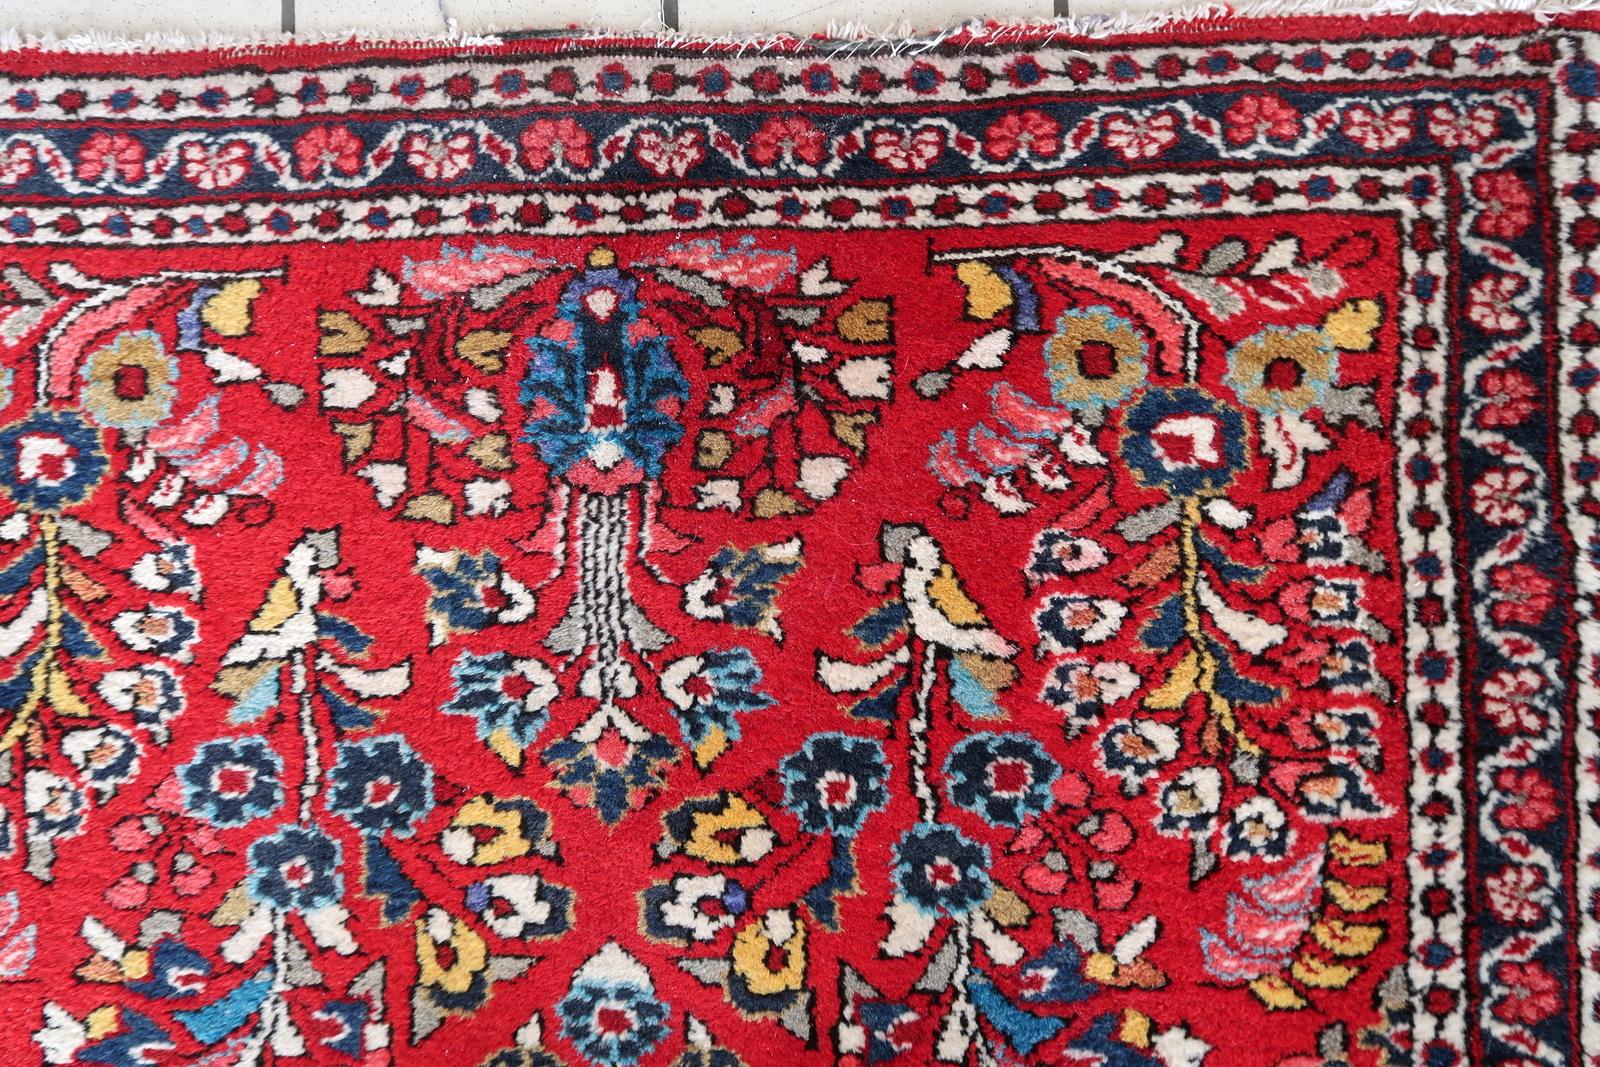 Verschönern Sie Ihren Raum mit unserem exquisiten handgefertigten orientalischen Sarouk-Teppich im Vintage-Stil. Dieser aus dem Nahen Osten stammende und in den 1950er Jahren gefertigte Teppich hat eine reiche Geschichte und eine außergewöhnliche